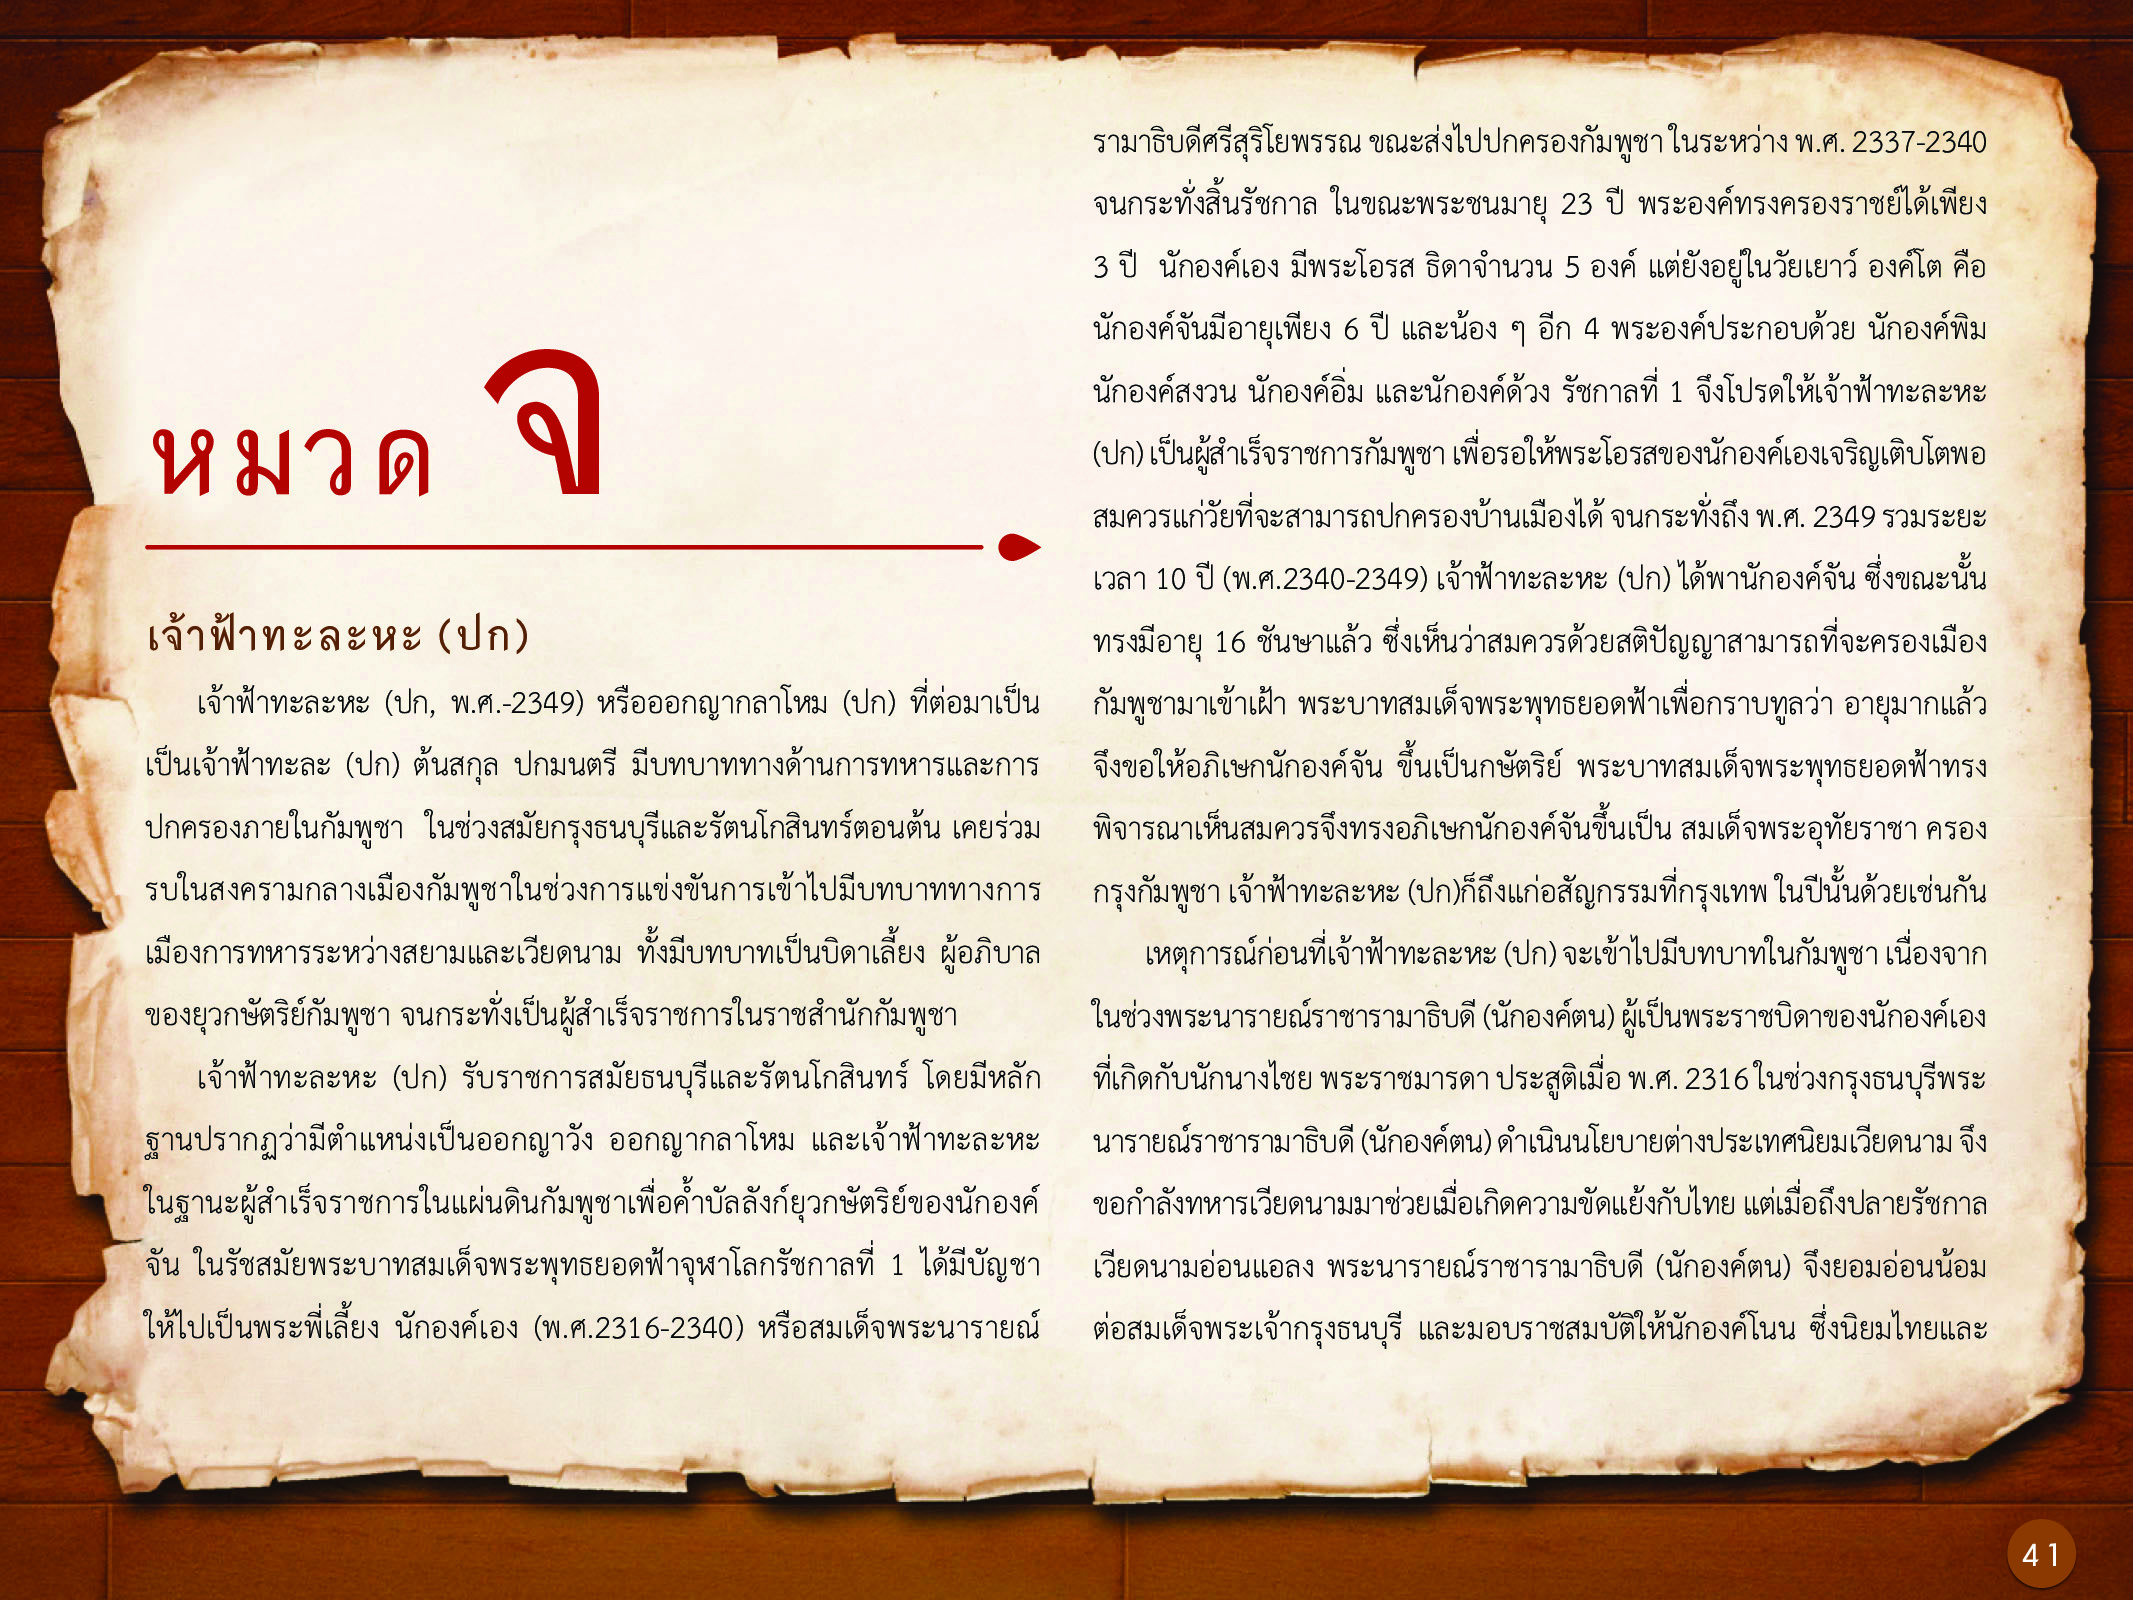 ประวัติศาสตร์กรุงธนบุรี ./images/history_dhonburi/41.jpg